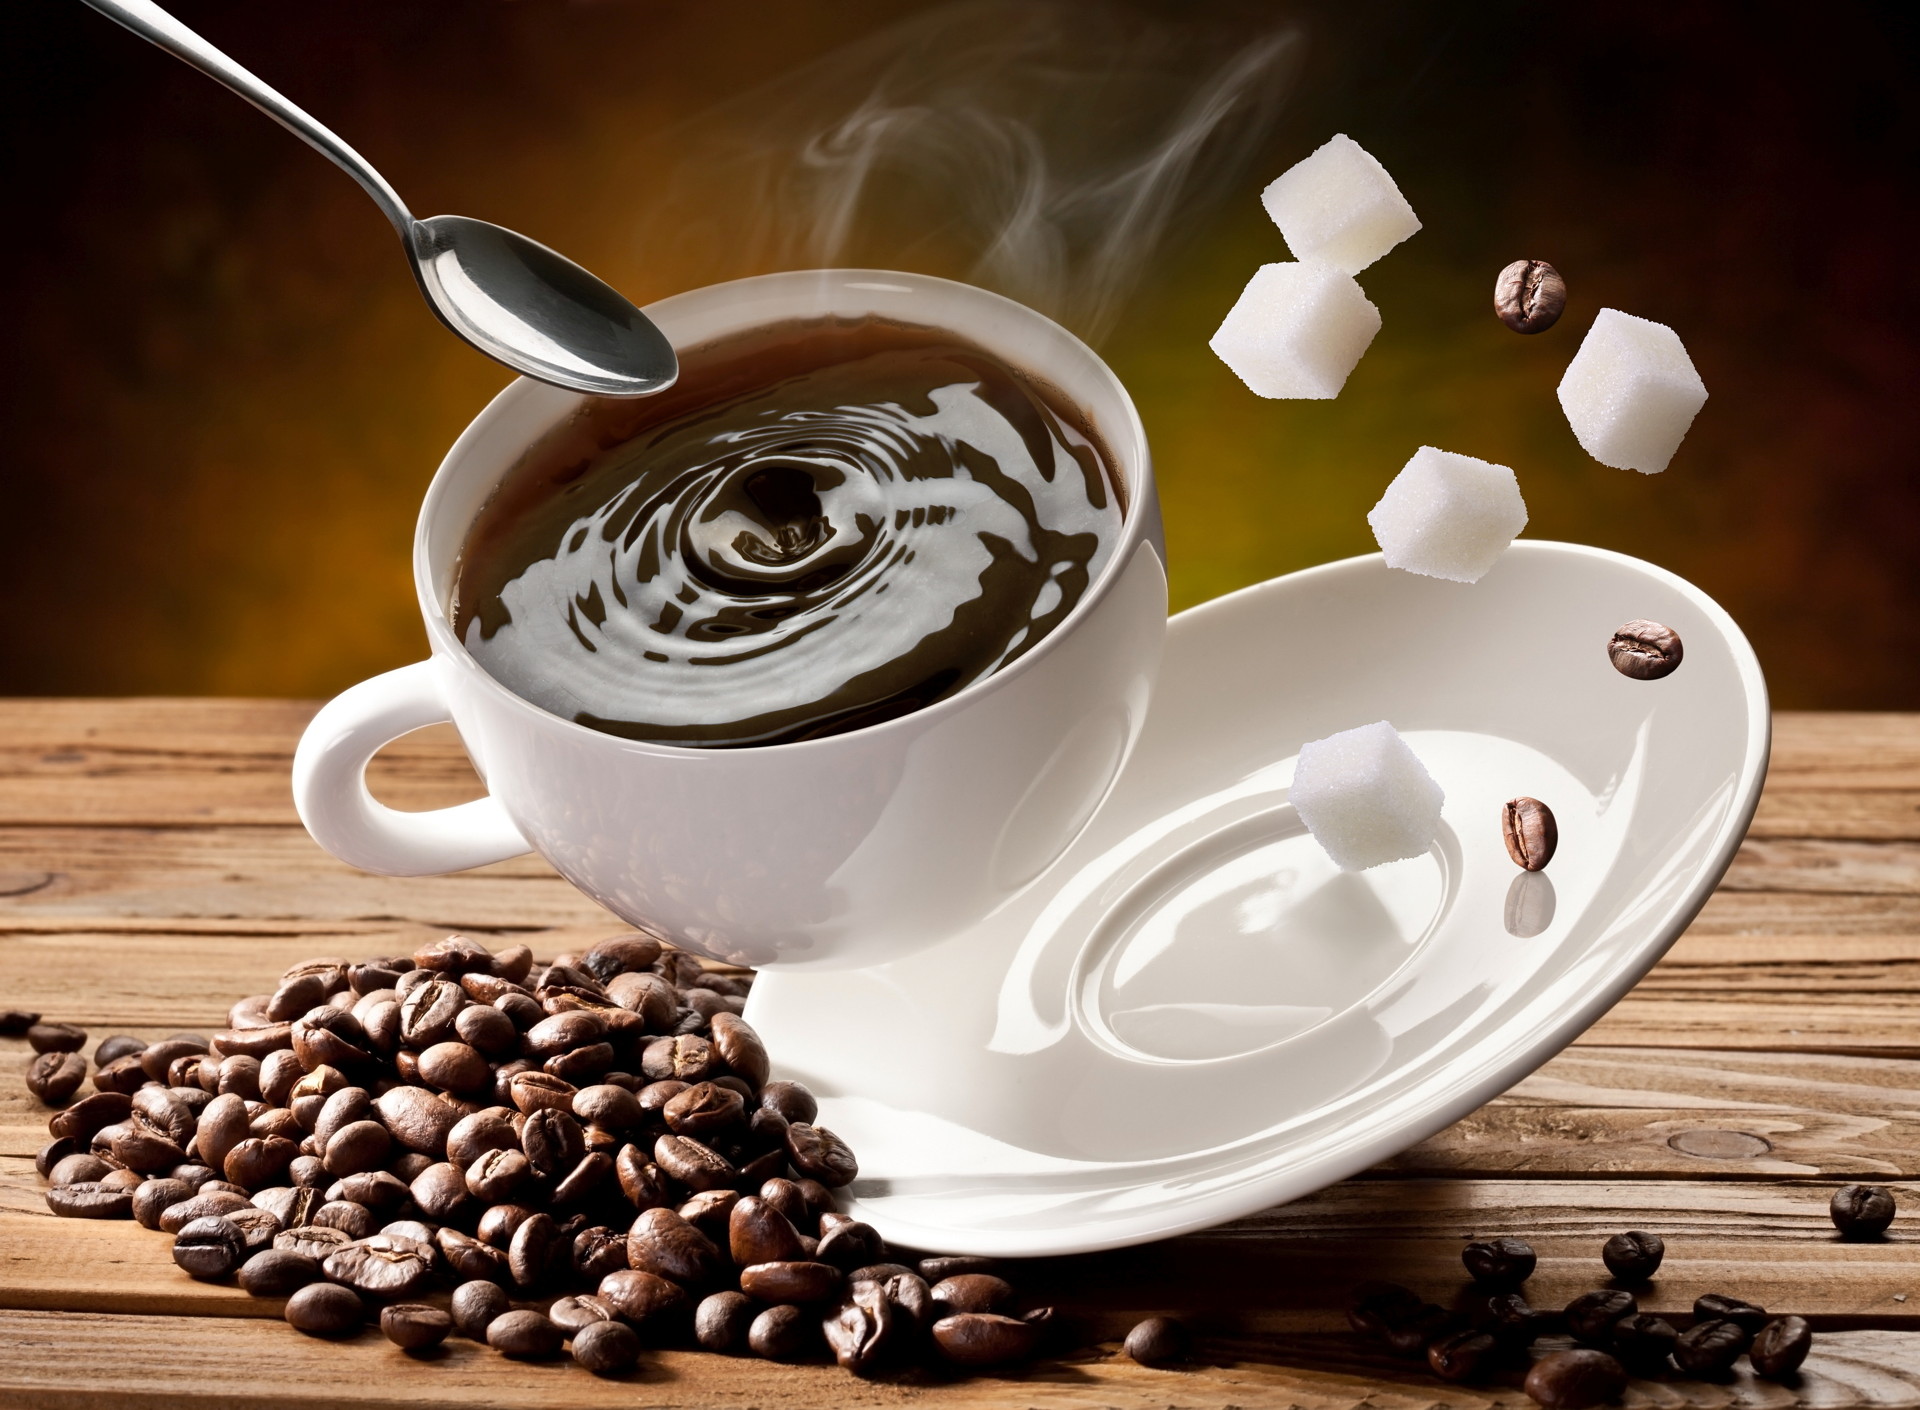 cà phê pha (2gói 1kg) emious cà phê chồn cao cấp, rang mộc tự nhiên, hạt arabica và robusta 100% nguyên chất, cà phê ngon tây nguyên 2